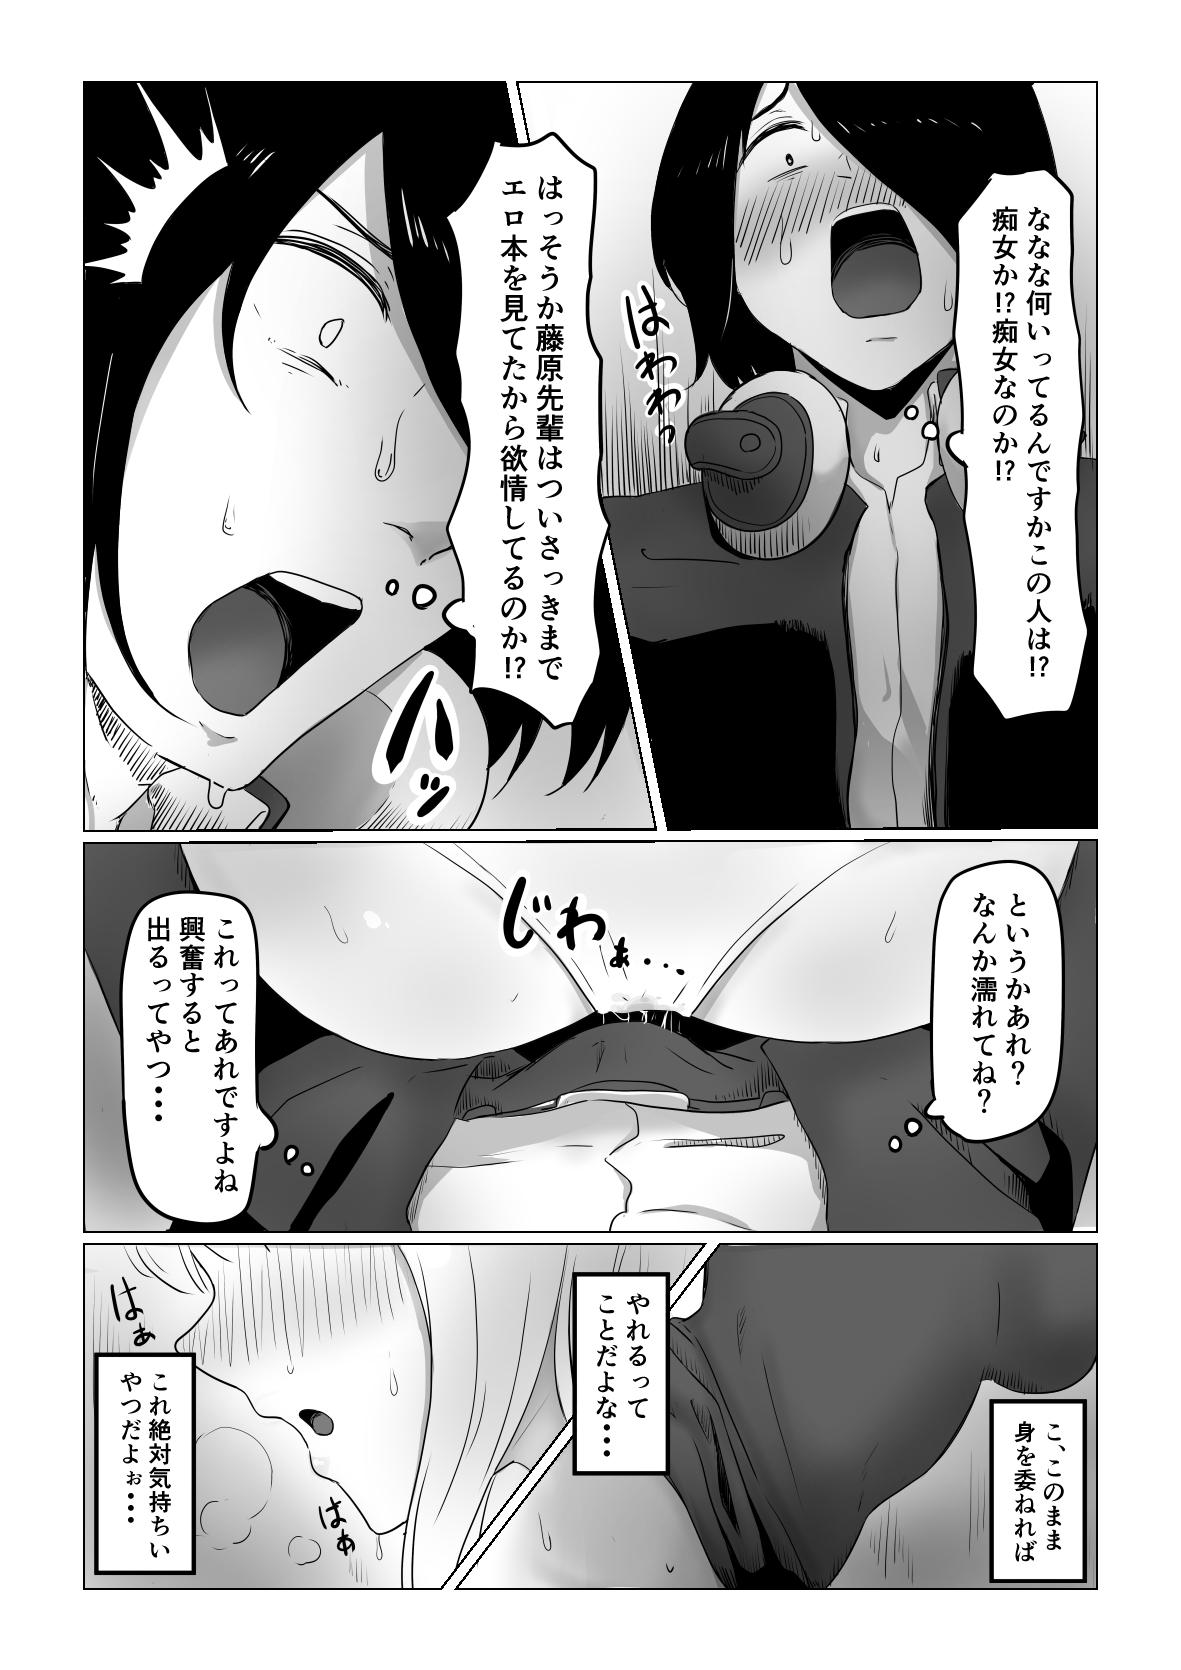 Fist Mitsu - Kaguya sama wa kokurasetai | kaguya sama love is war Whooty - Page 10